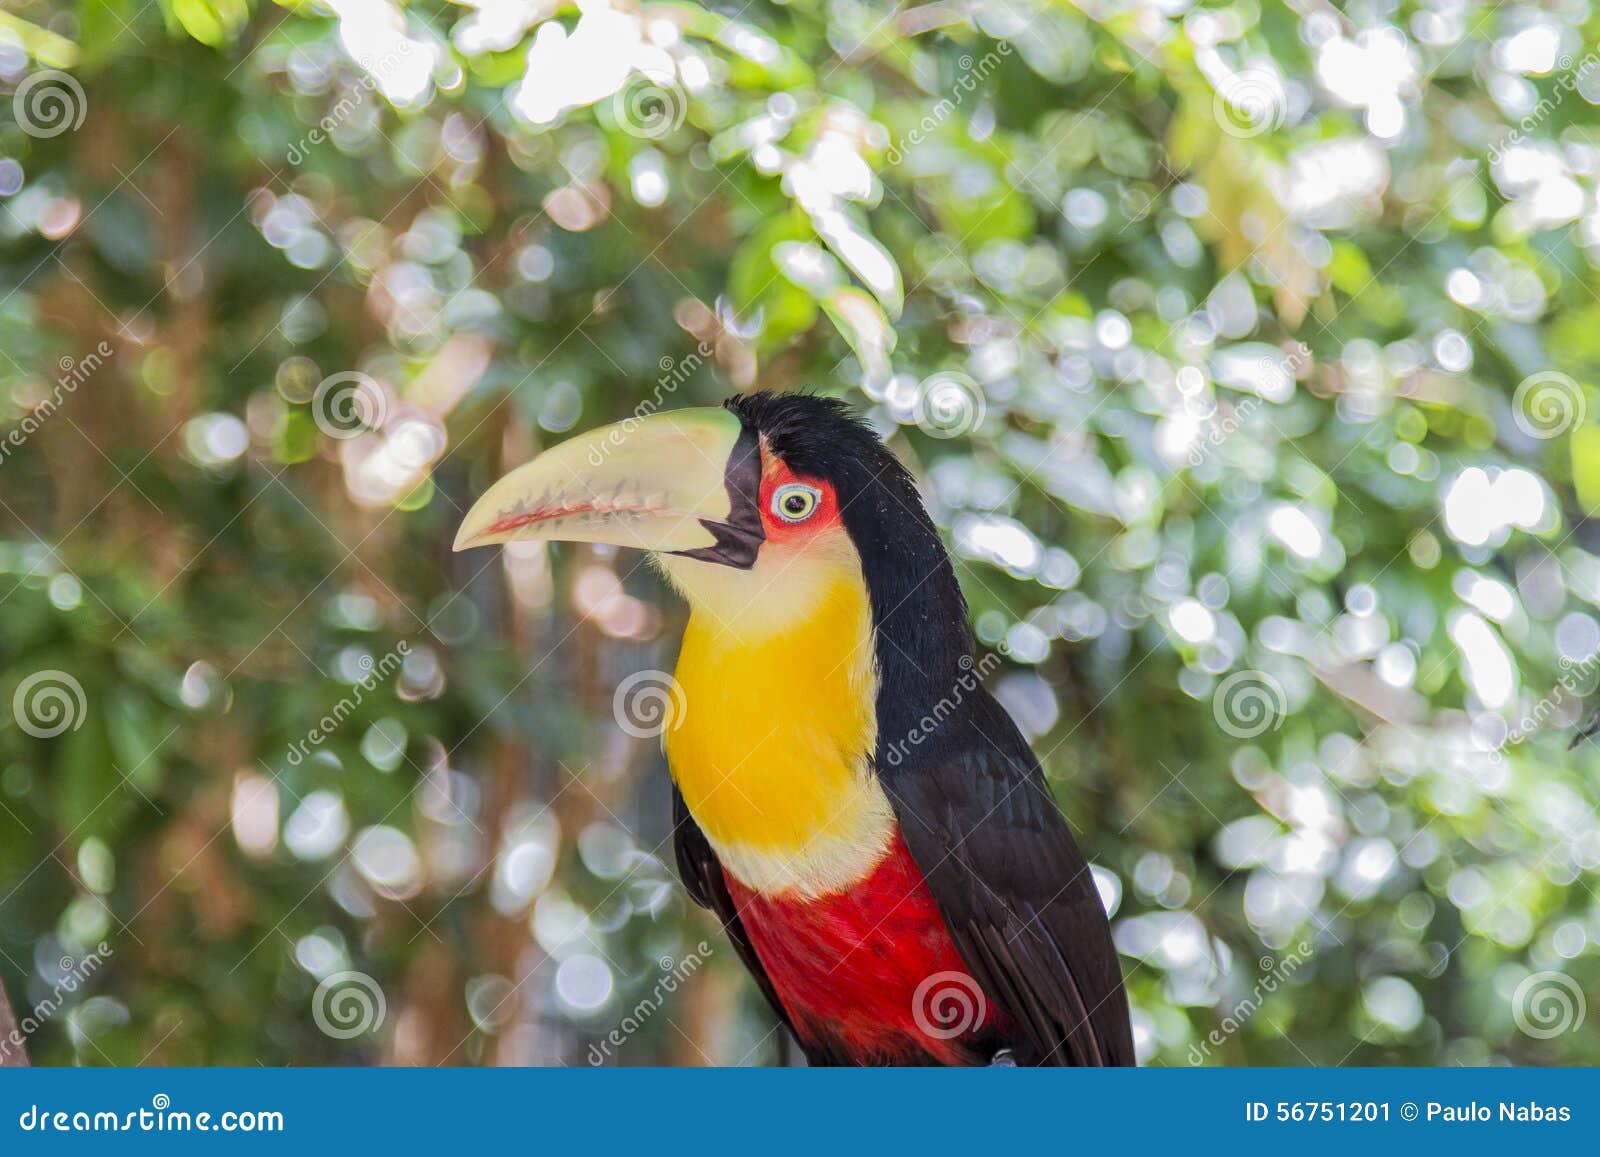 tucano, parque das aves, foz do iguacu, brazil.